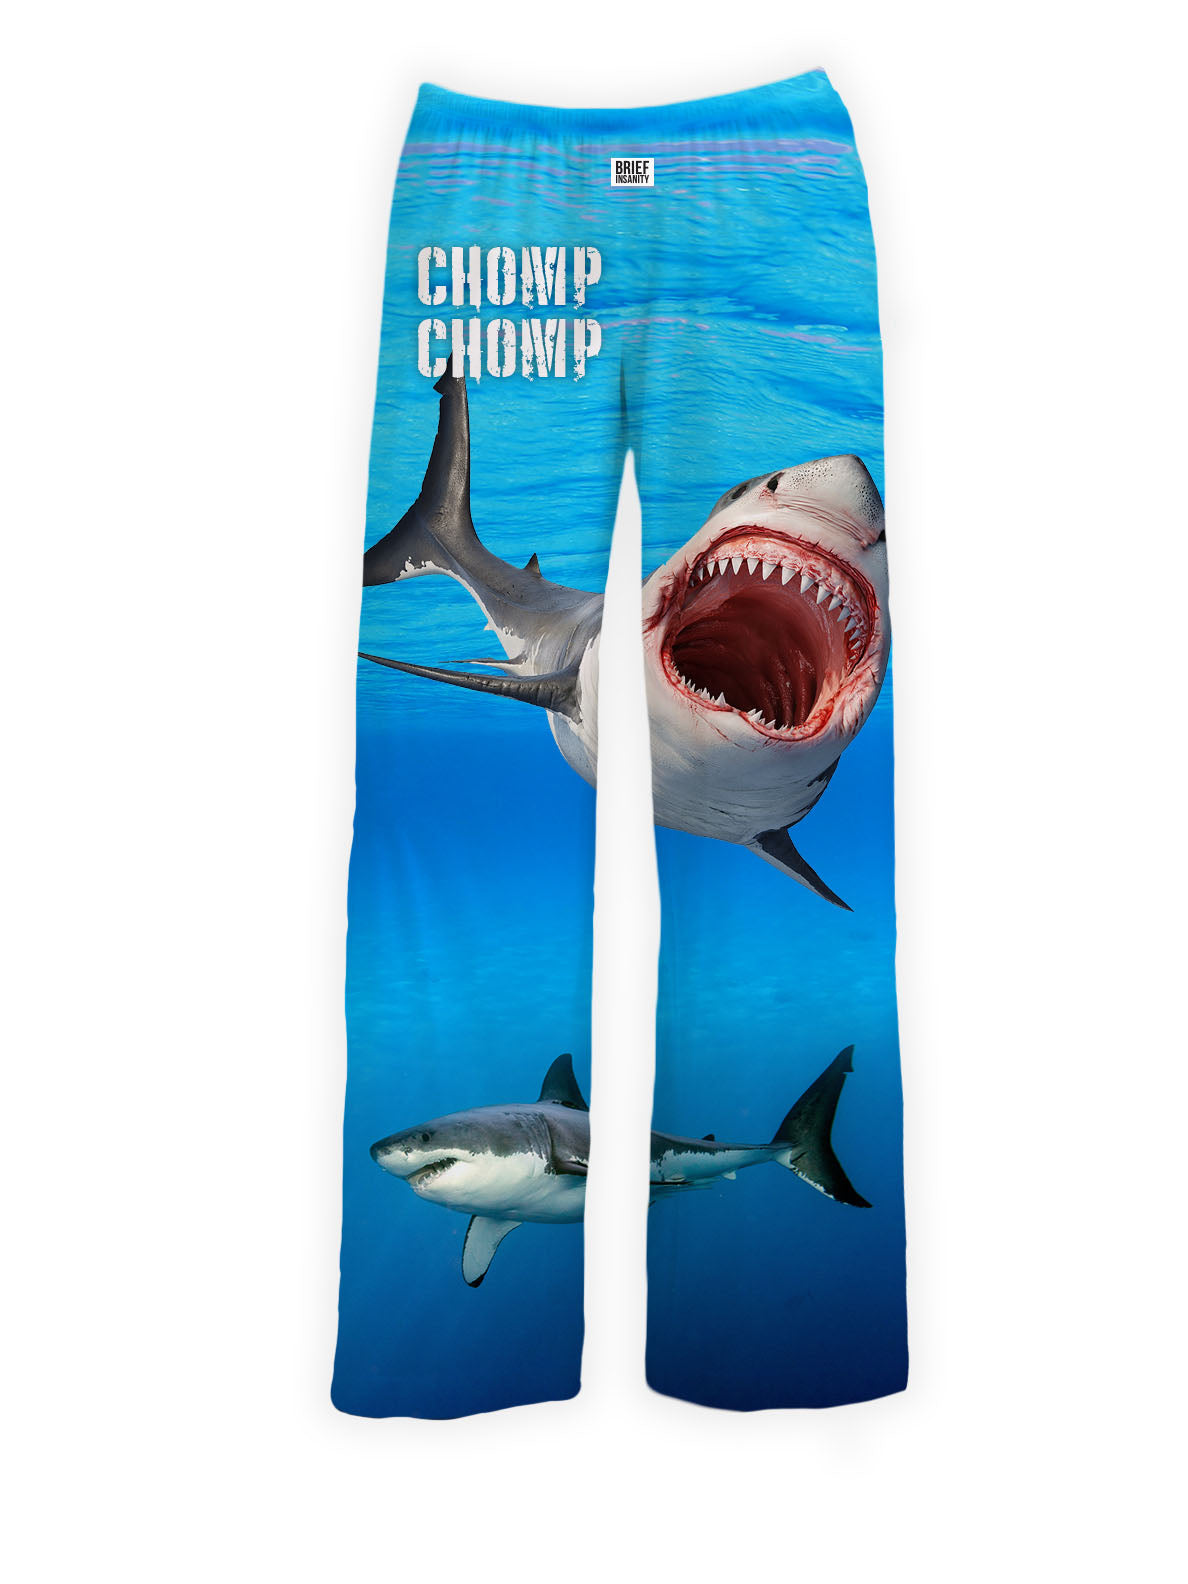 BRIEF INSANITY CHOMP CHOMP Shark Pajama Lounge Pants